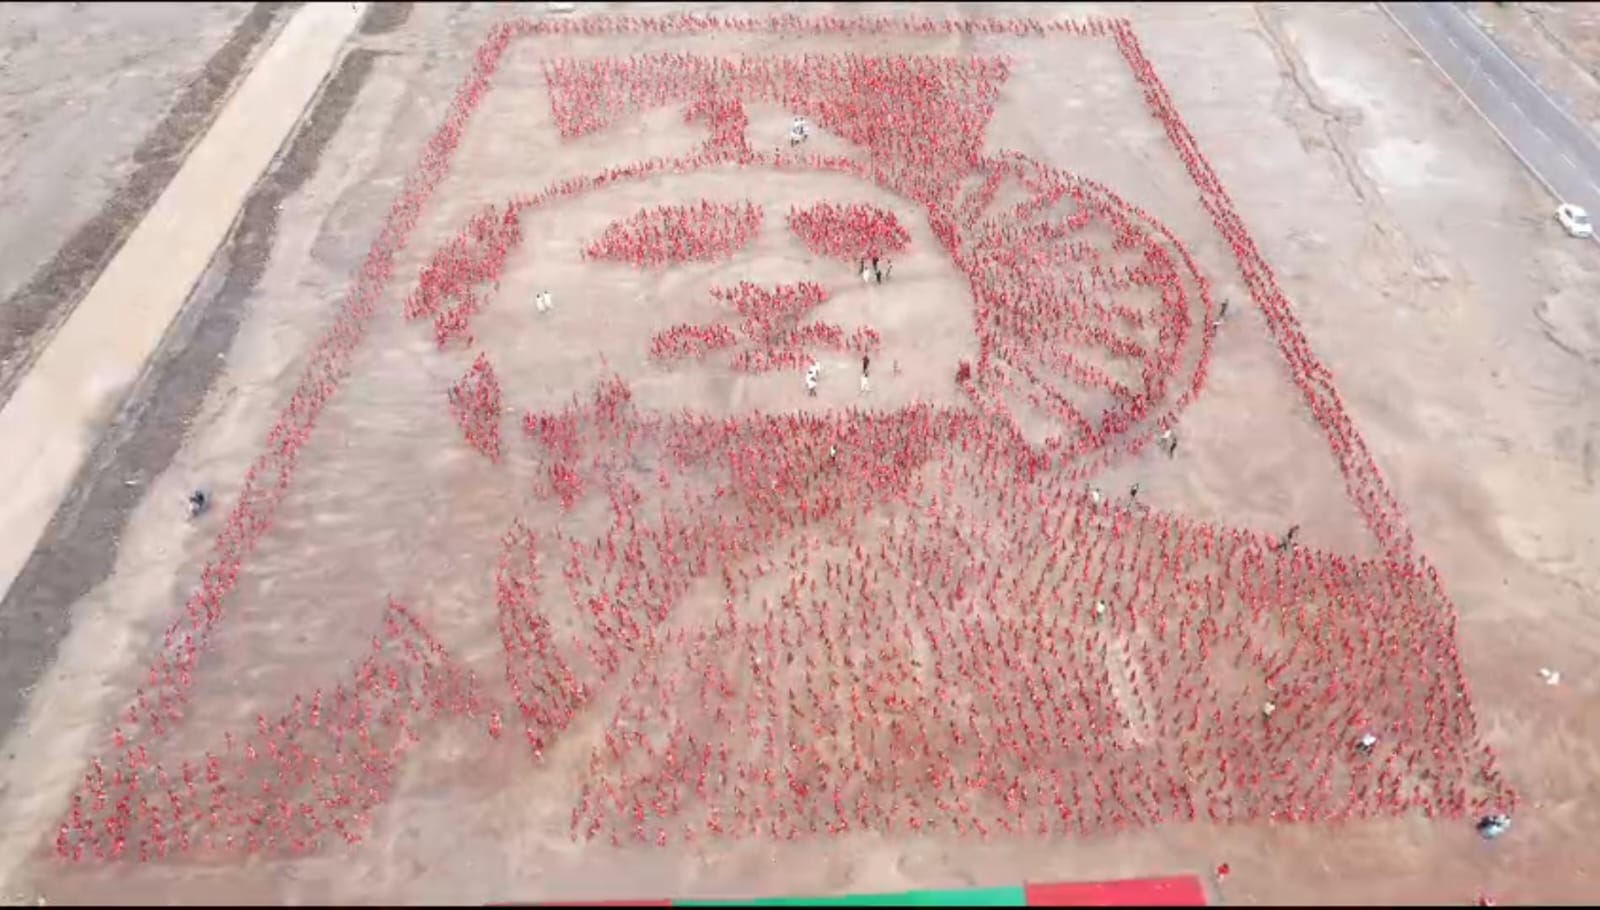 प्रयागराज में खास अंदाज में मनाया गया अखिलेश यादव का जन्मदिन, 5100 झंडों से बनाया चित्र